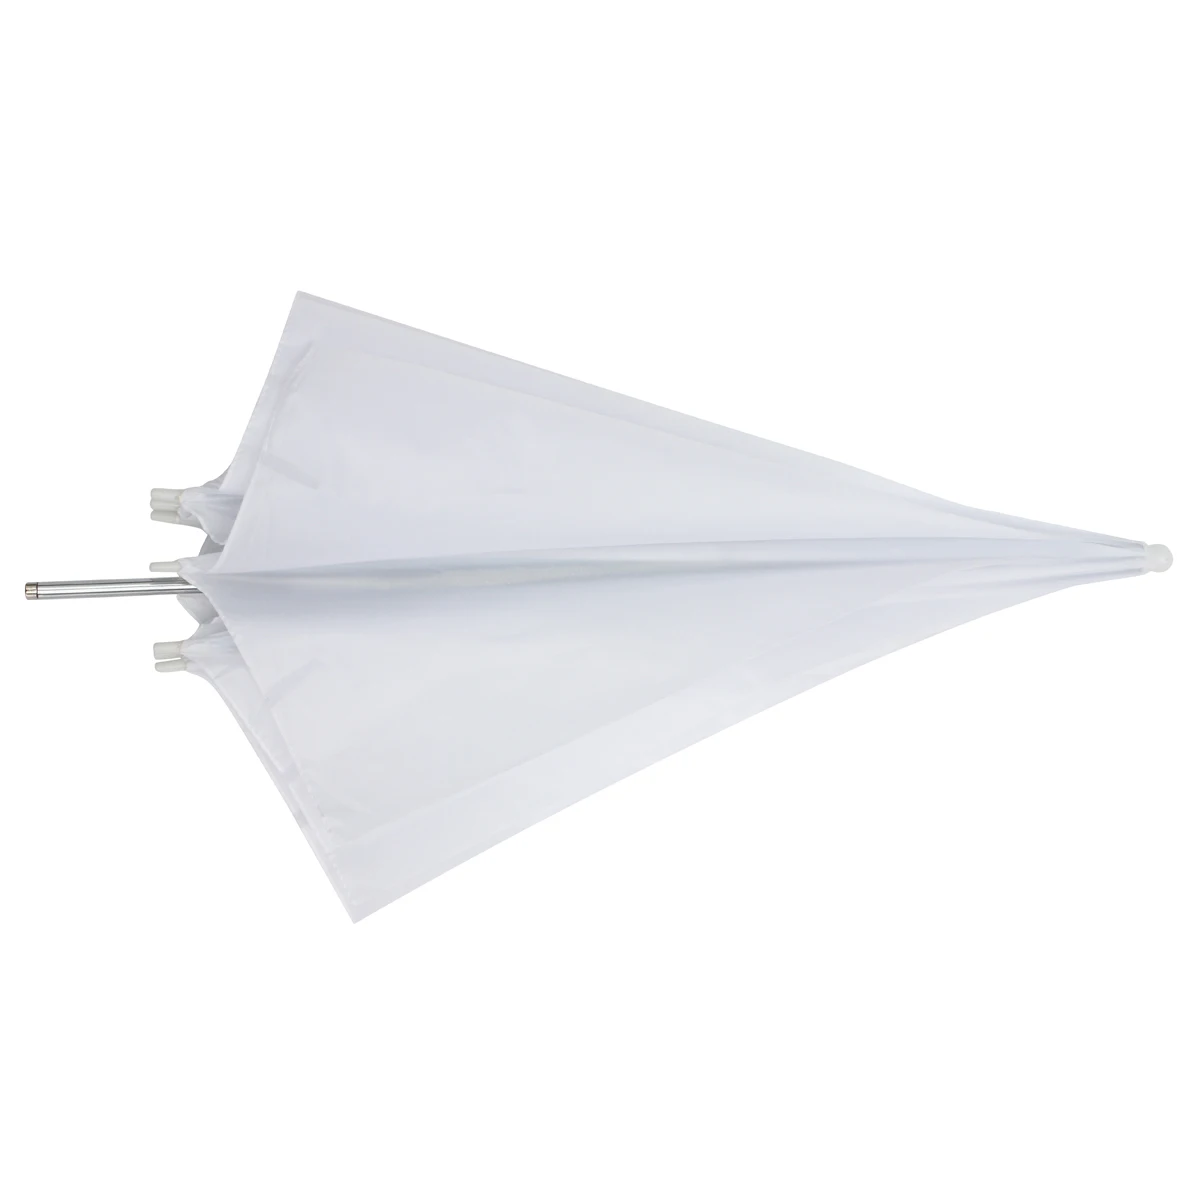 43 дюймов фотостудия видео фото светильник зонтик белый прозрачный рассеиватель вспышка мягкий Зонт аксессуары